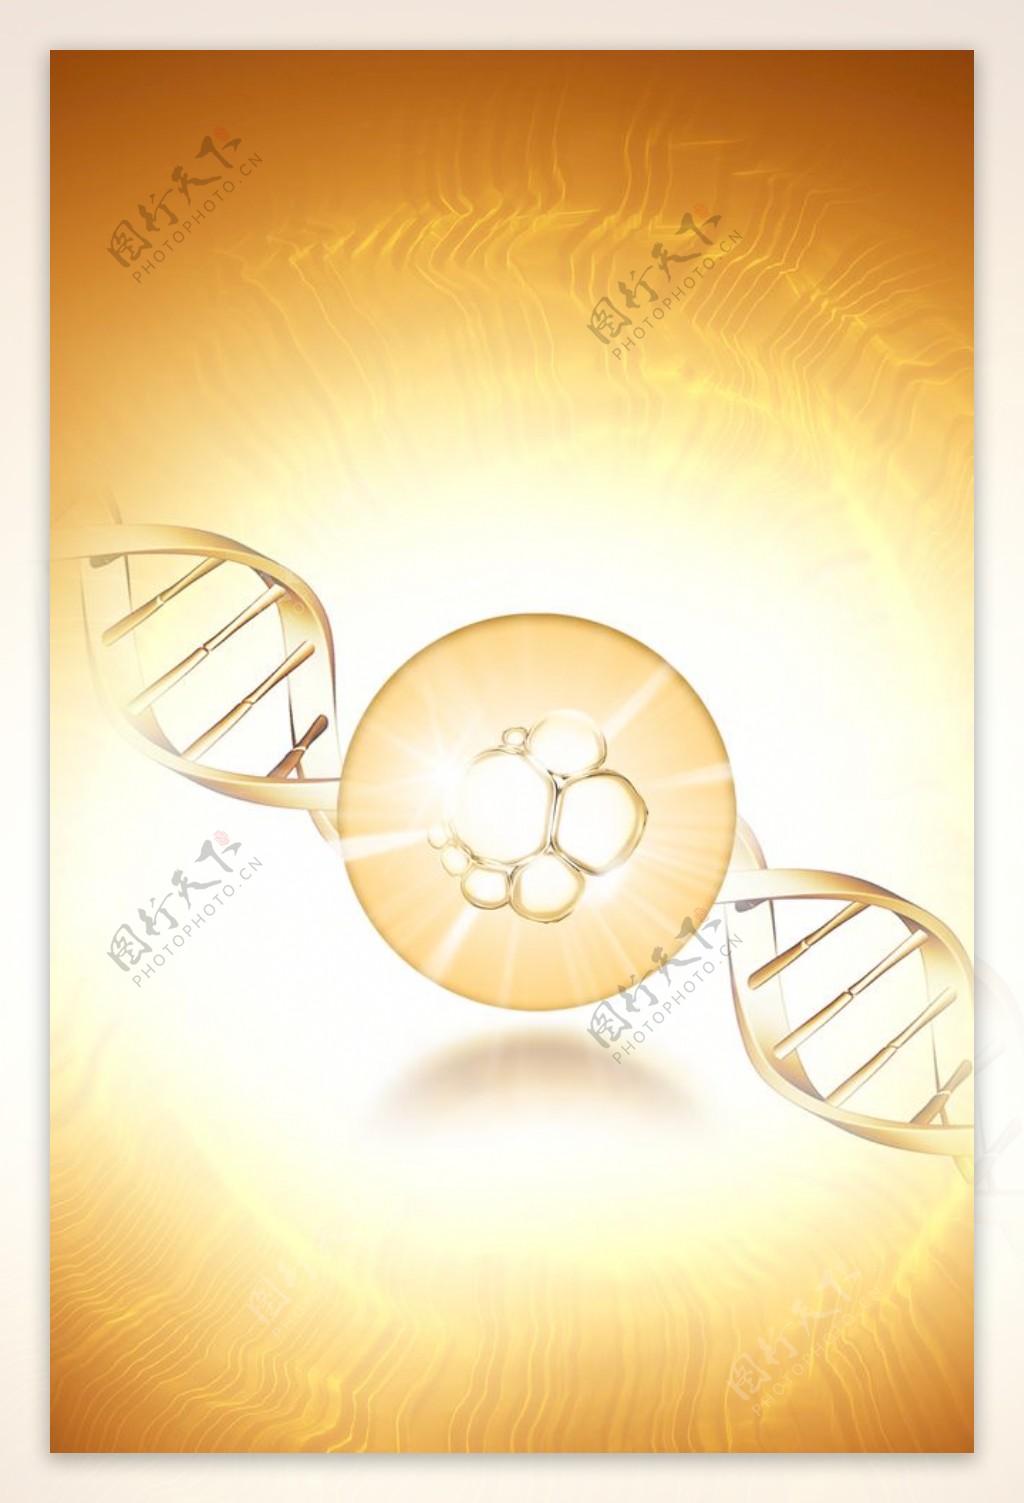 细胞精华螺旋体DNA